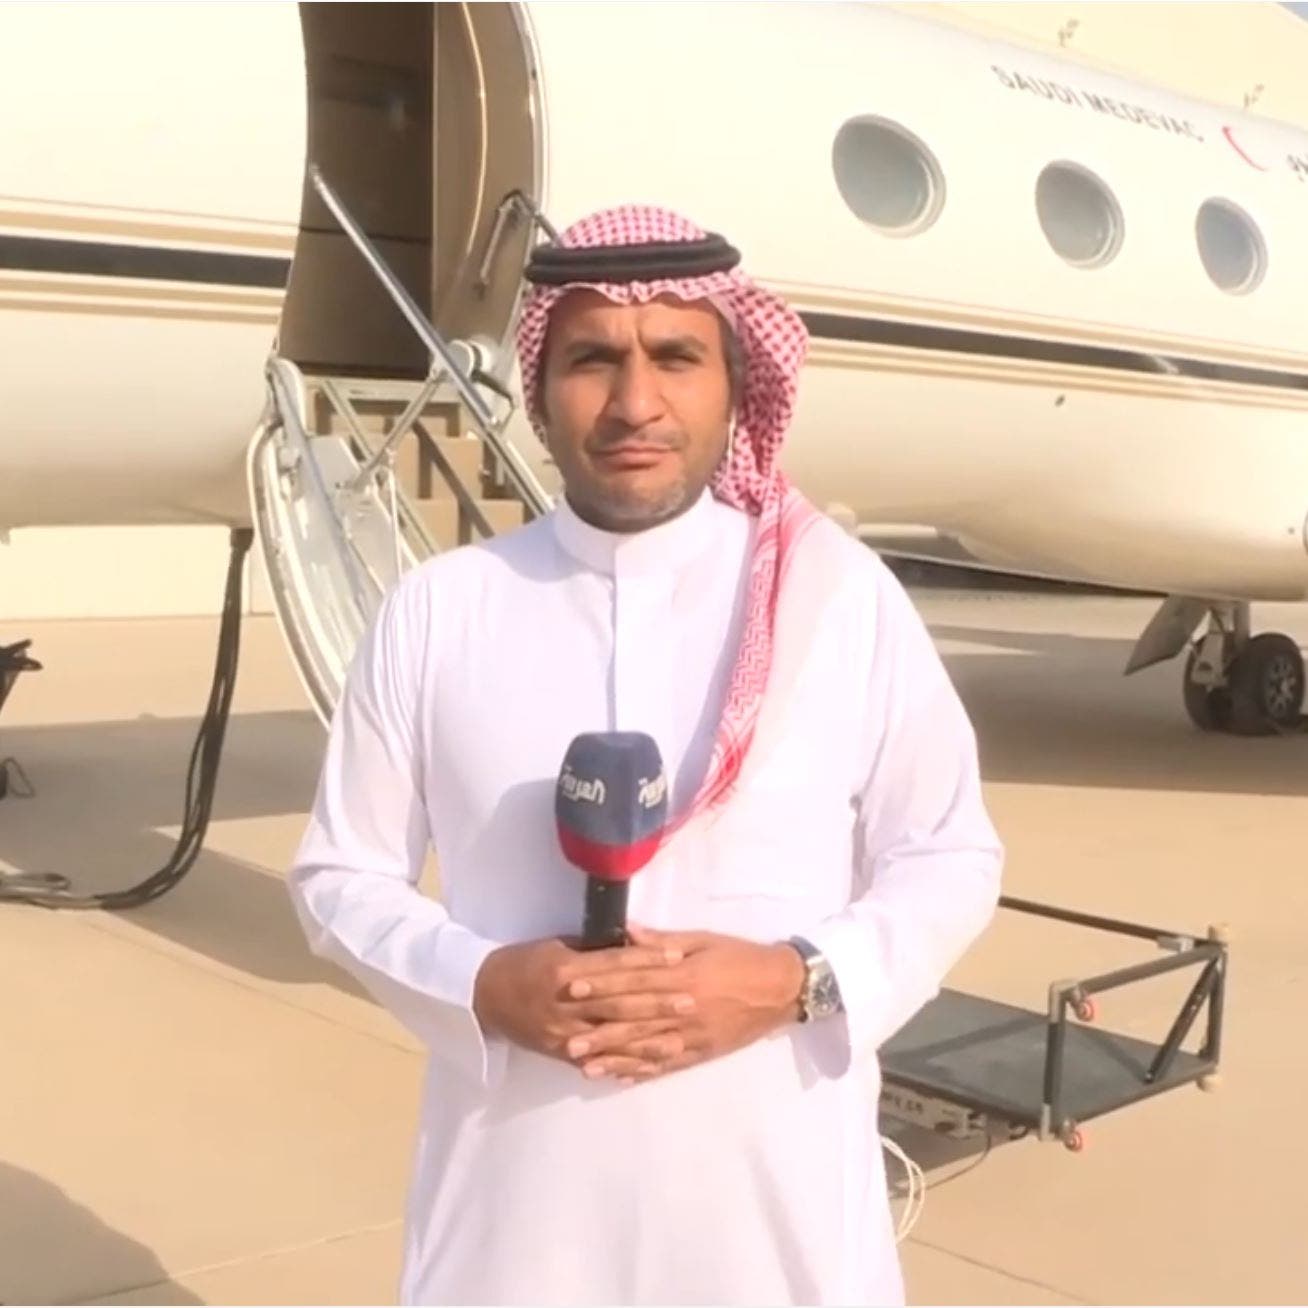 نشرة الرابعة | طائرات وزارة الدفاع السعودية تنقل مصابي كورونا